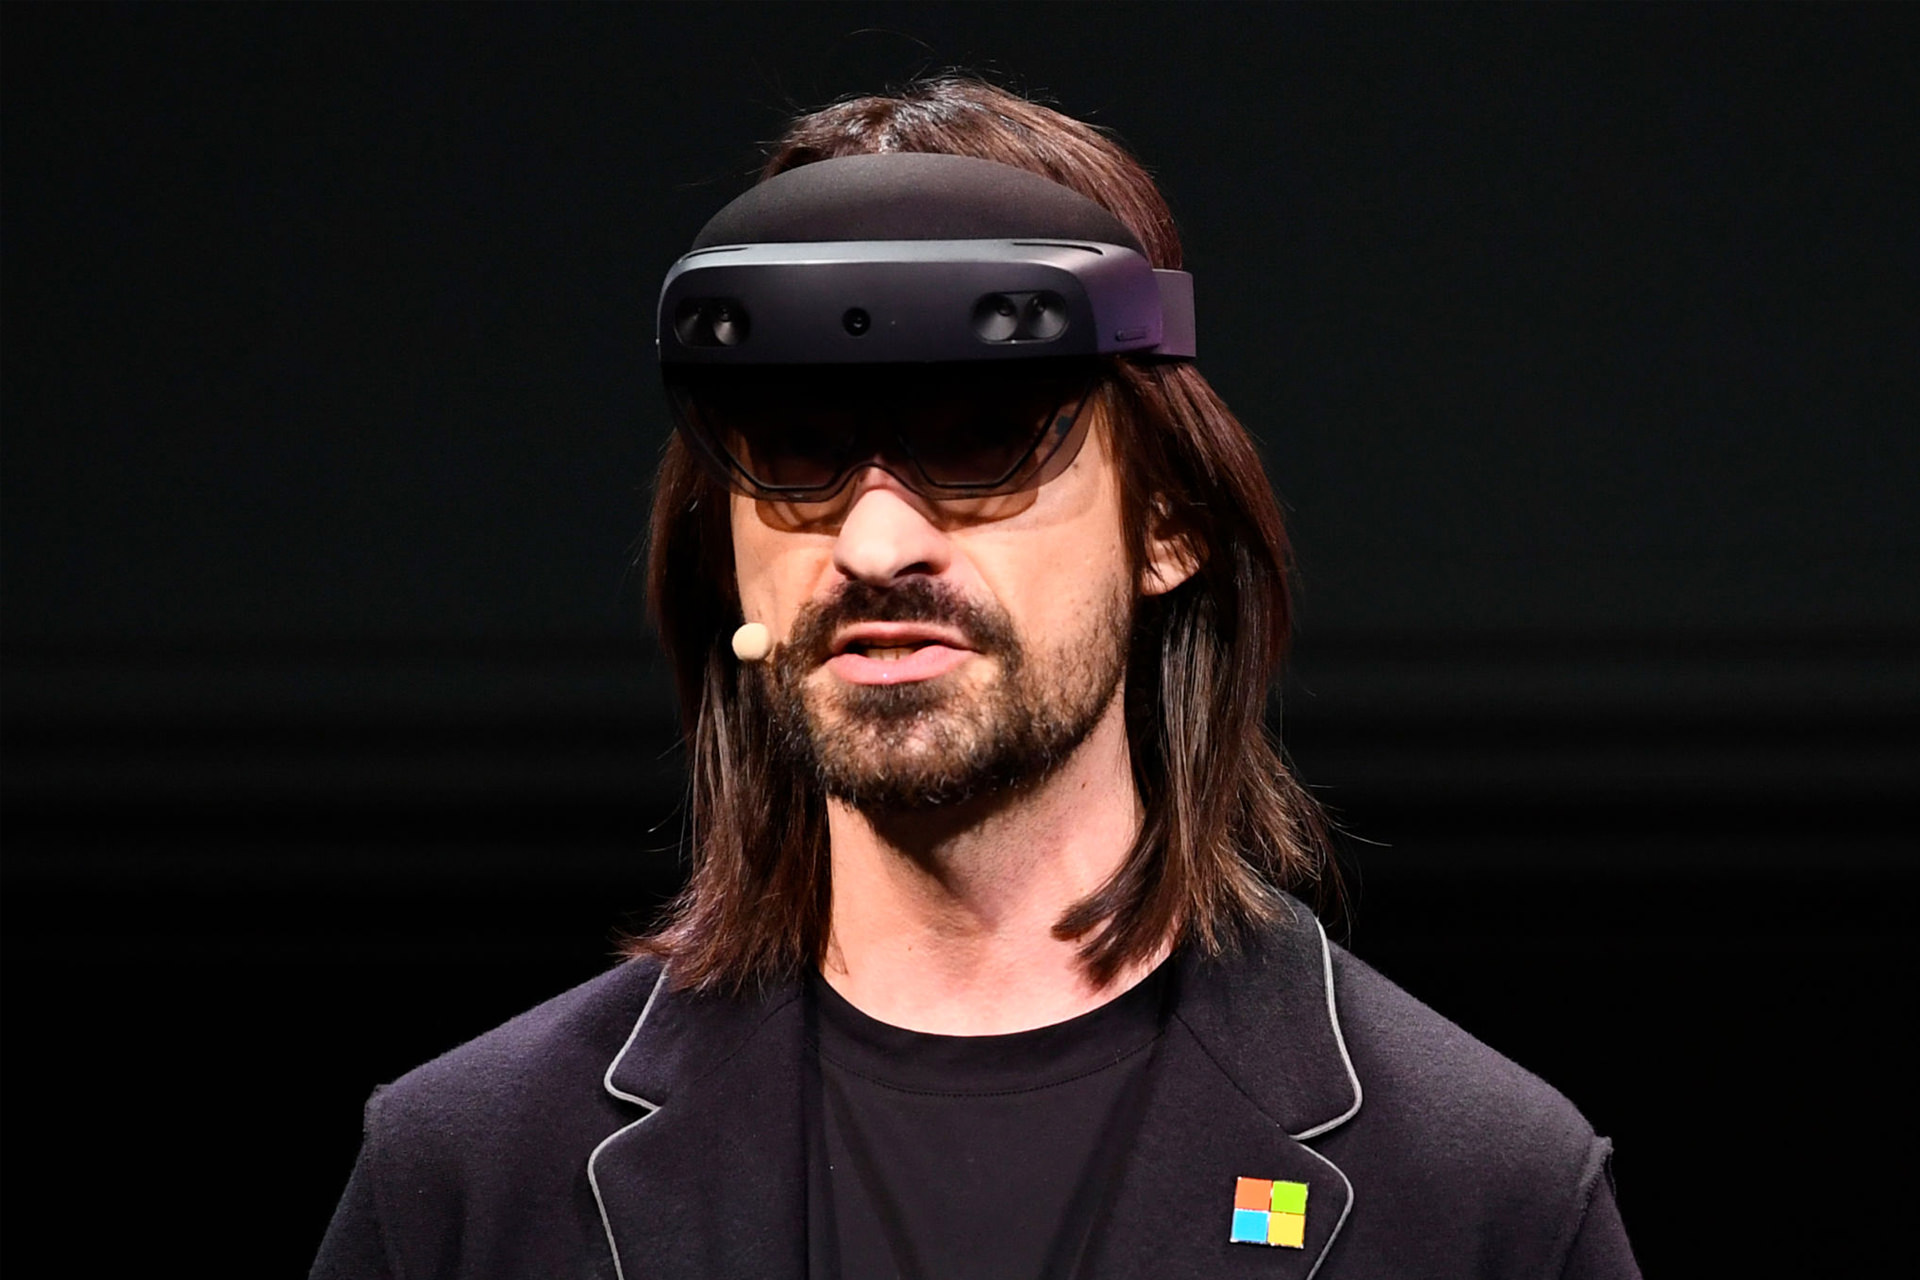 الکس کیپمن، مدیر واحد HoloLens مایکروسافت، به دلیل سوءرفتار جنسی از سمت خود برکنار شد